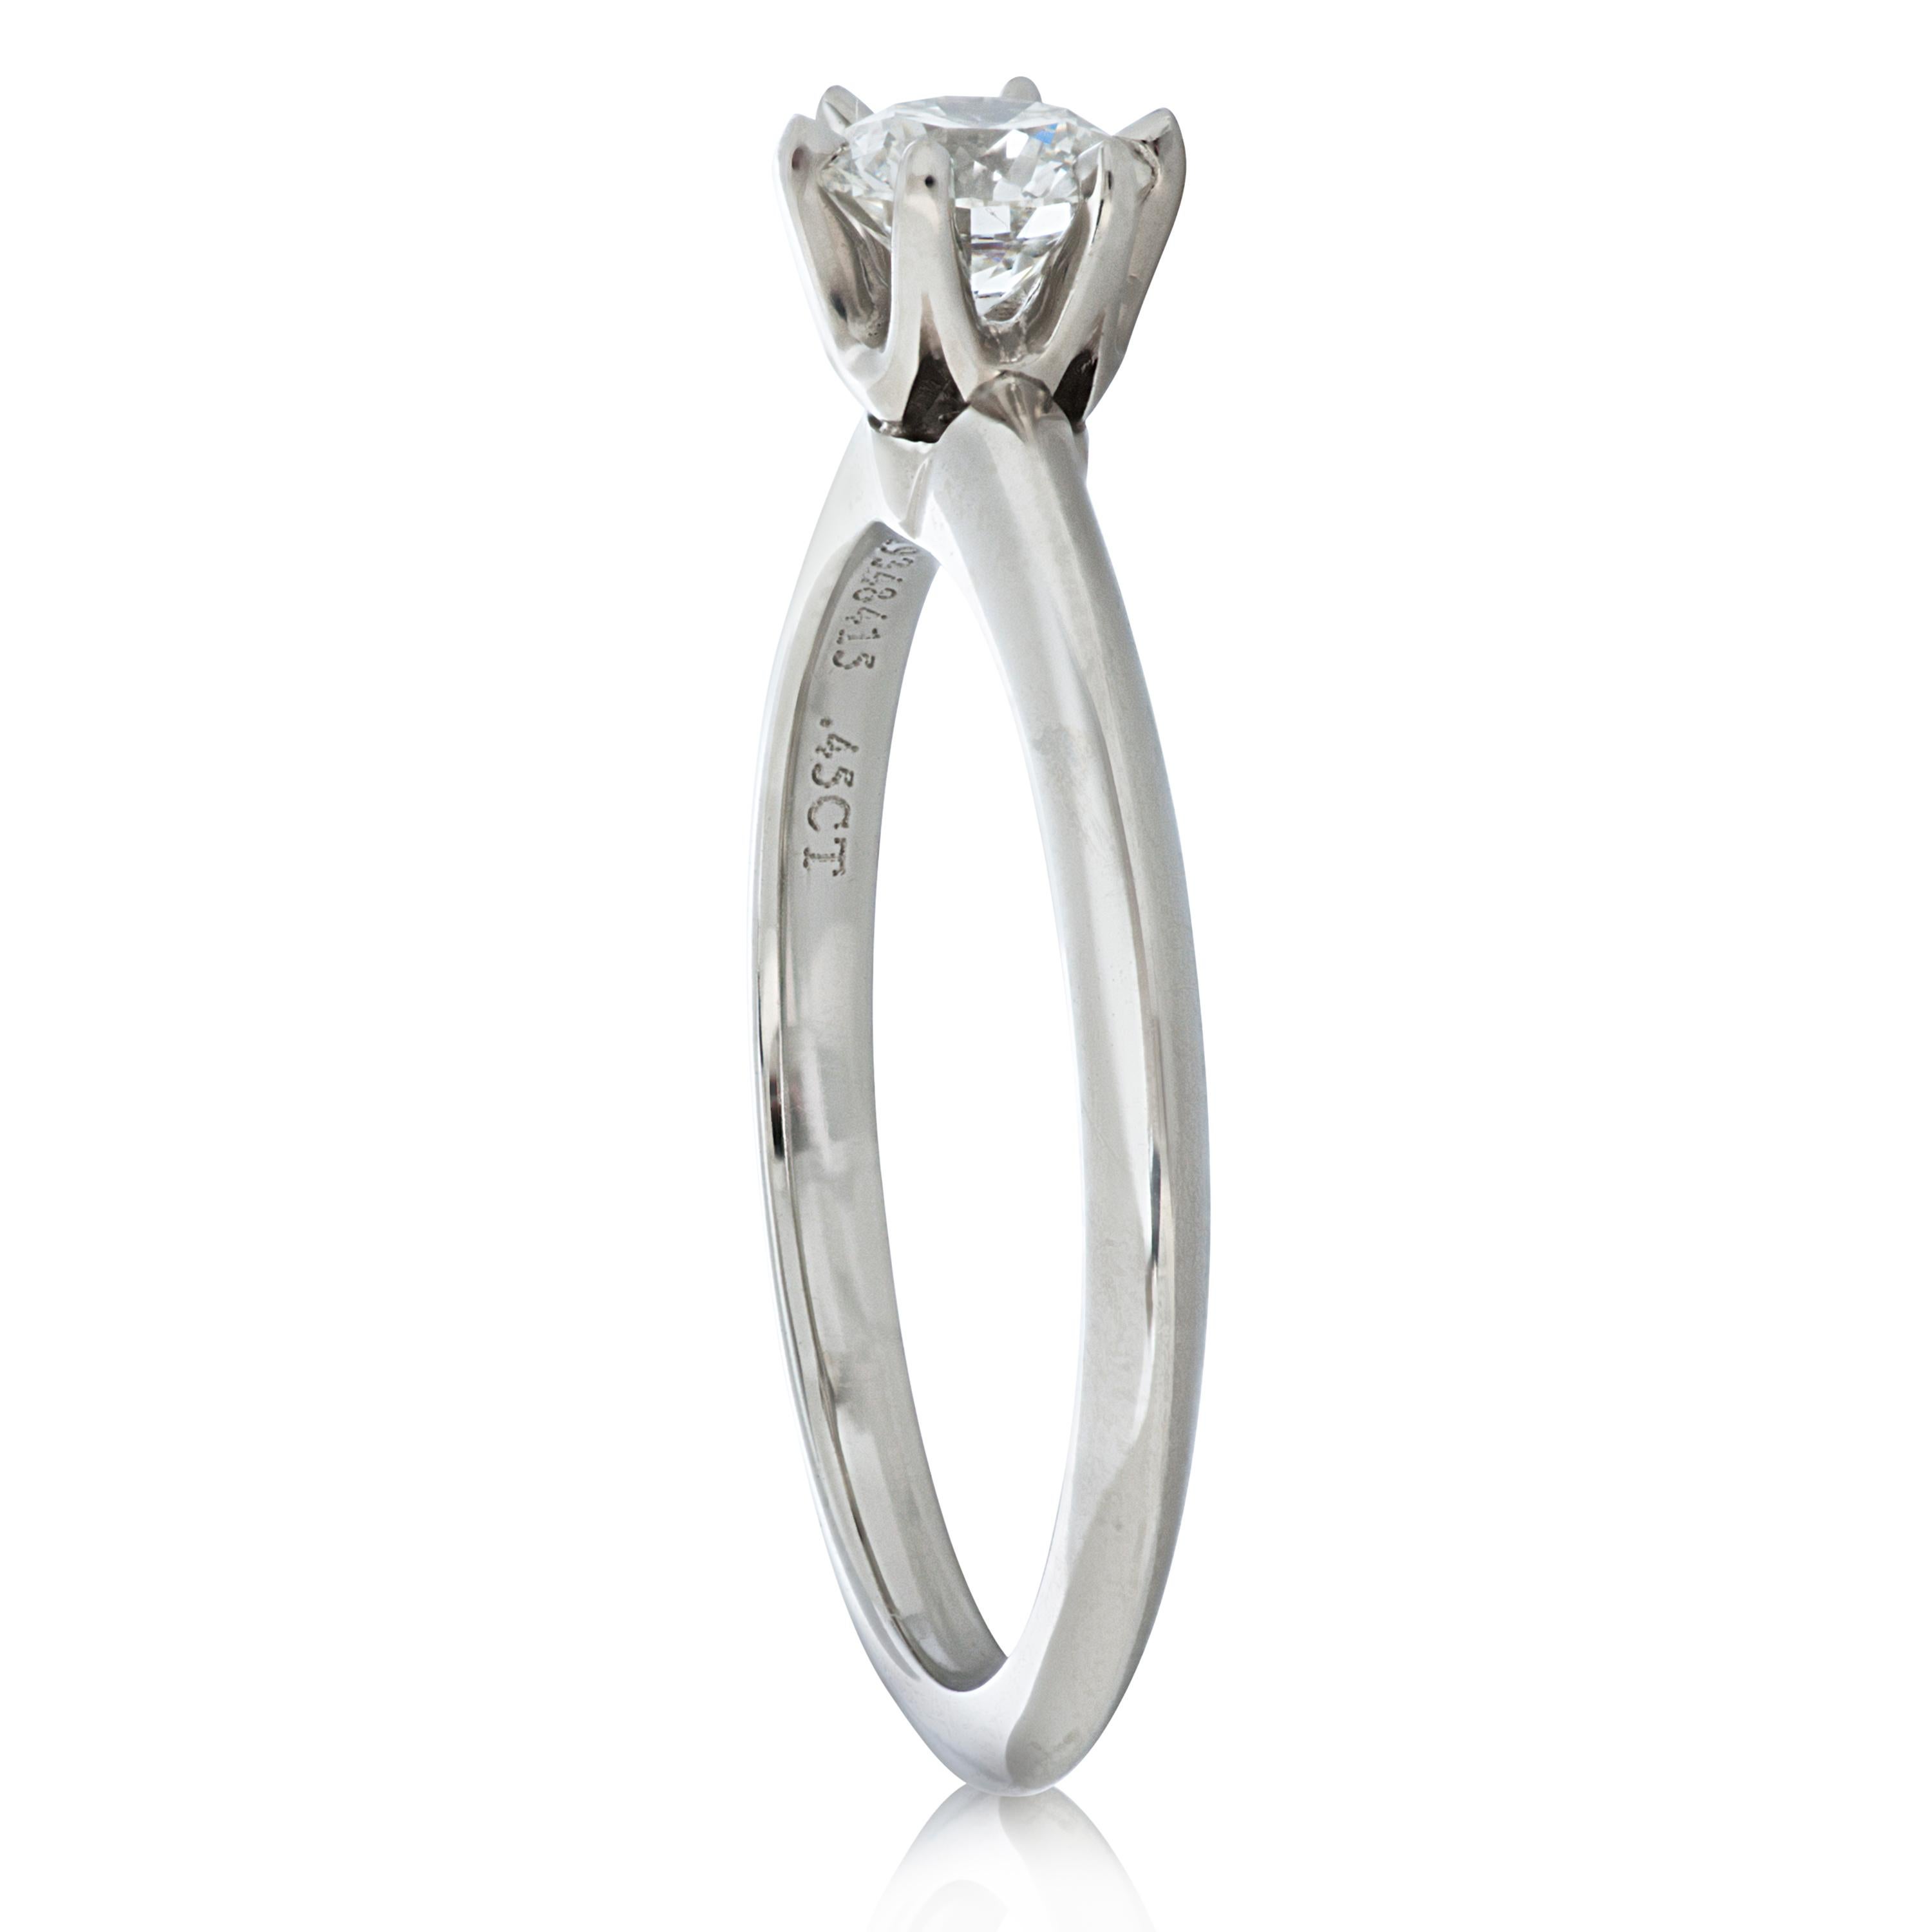 Runder Solitär-Diamant-Verlobungsring von Tiffany & Co. in Platin, begleitet von Tiffany & Co. Diamant-Zertifikat.

Der Mittelstein dieses Rings ist ein runder Diamant von 0,45 Karat im Brillantschliff mit der Farbe G und der Reinheit VS1, gefasst